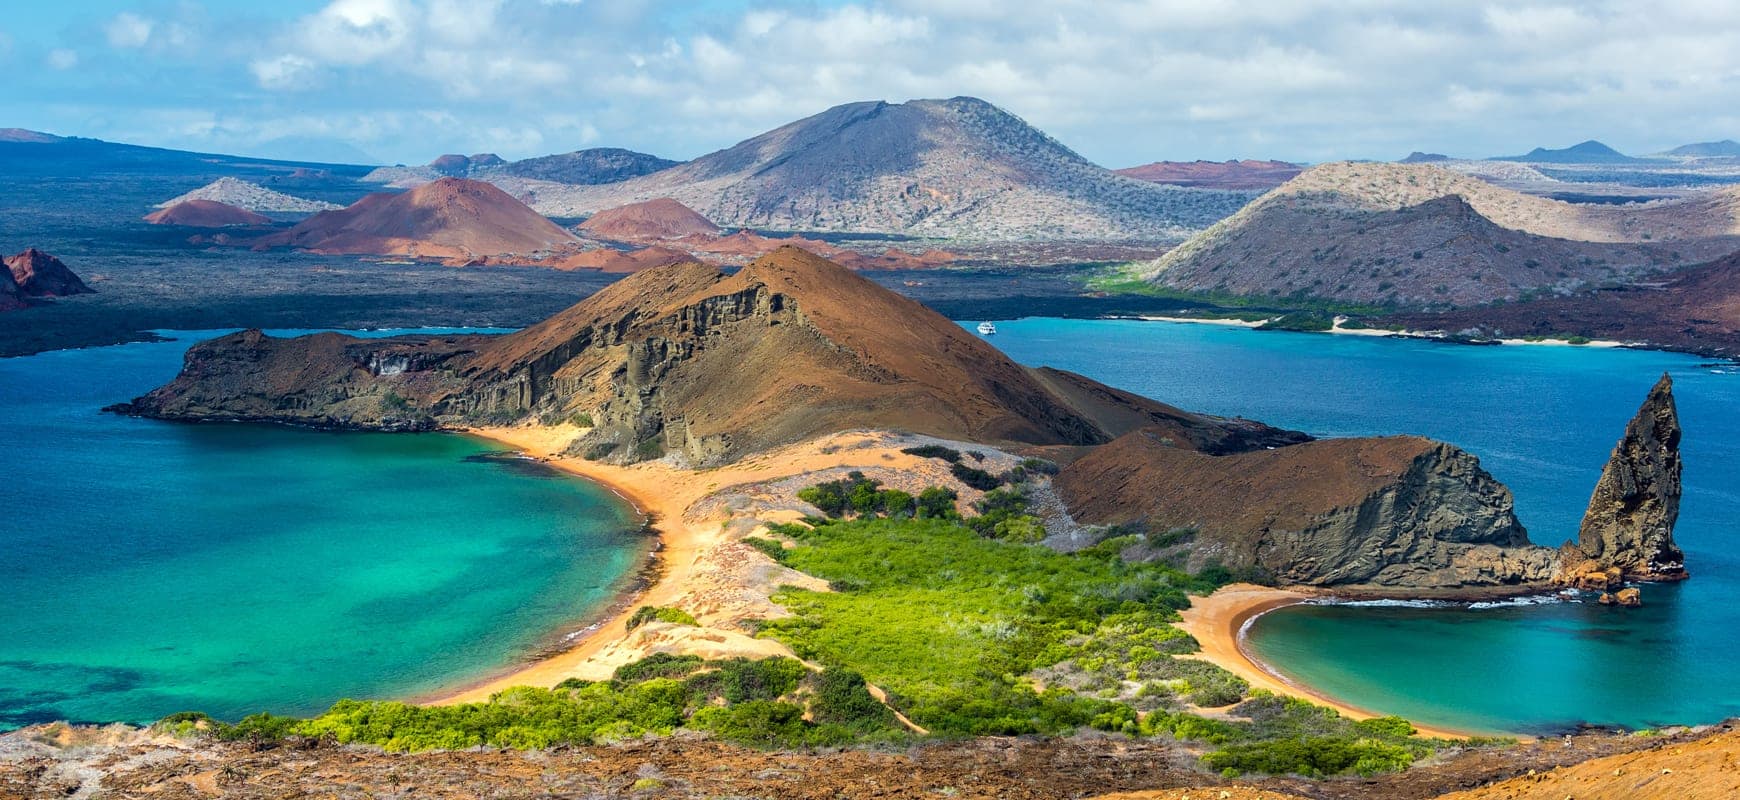 53 Liveaboard Duikvakanties - Galapagos Eilanden - LiveAboard.com